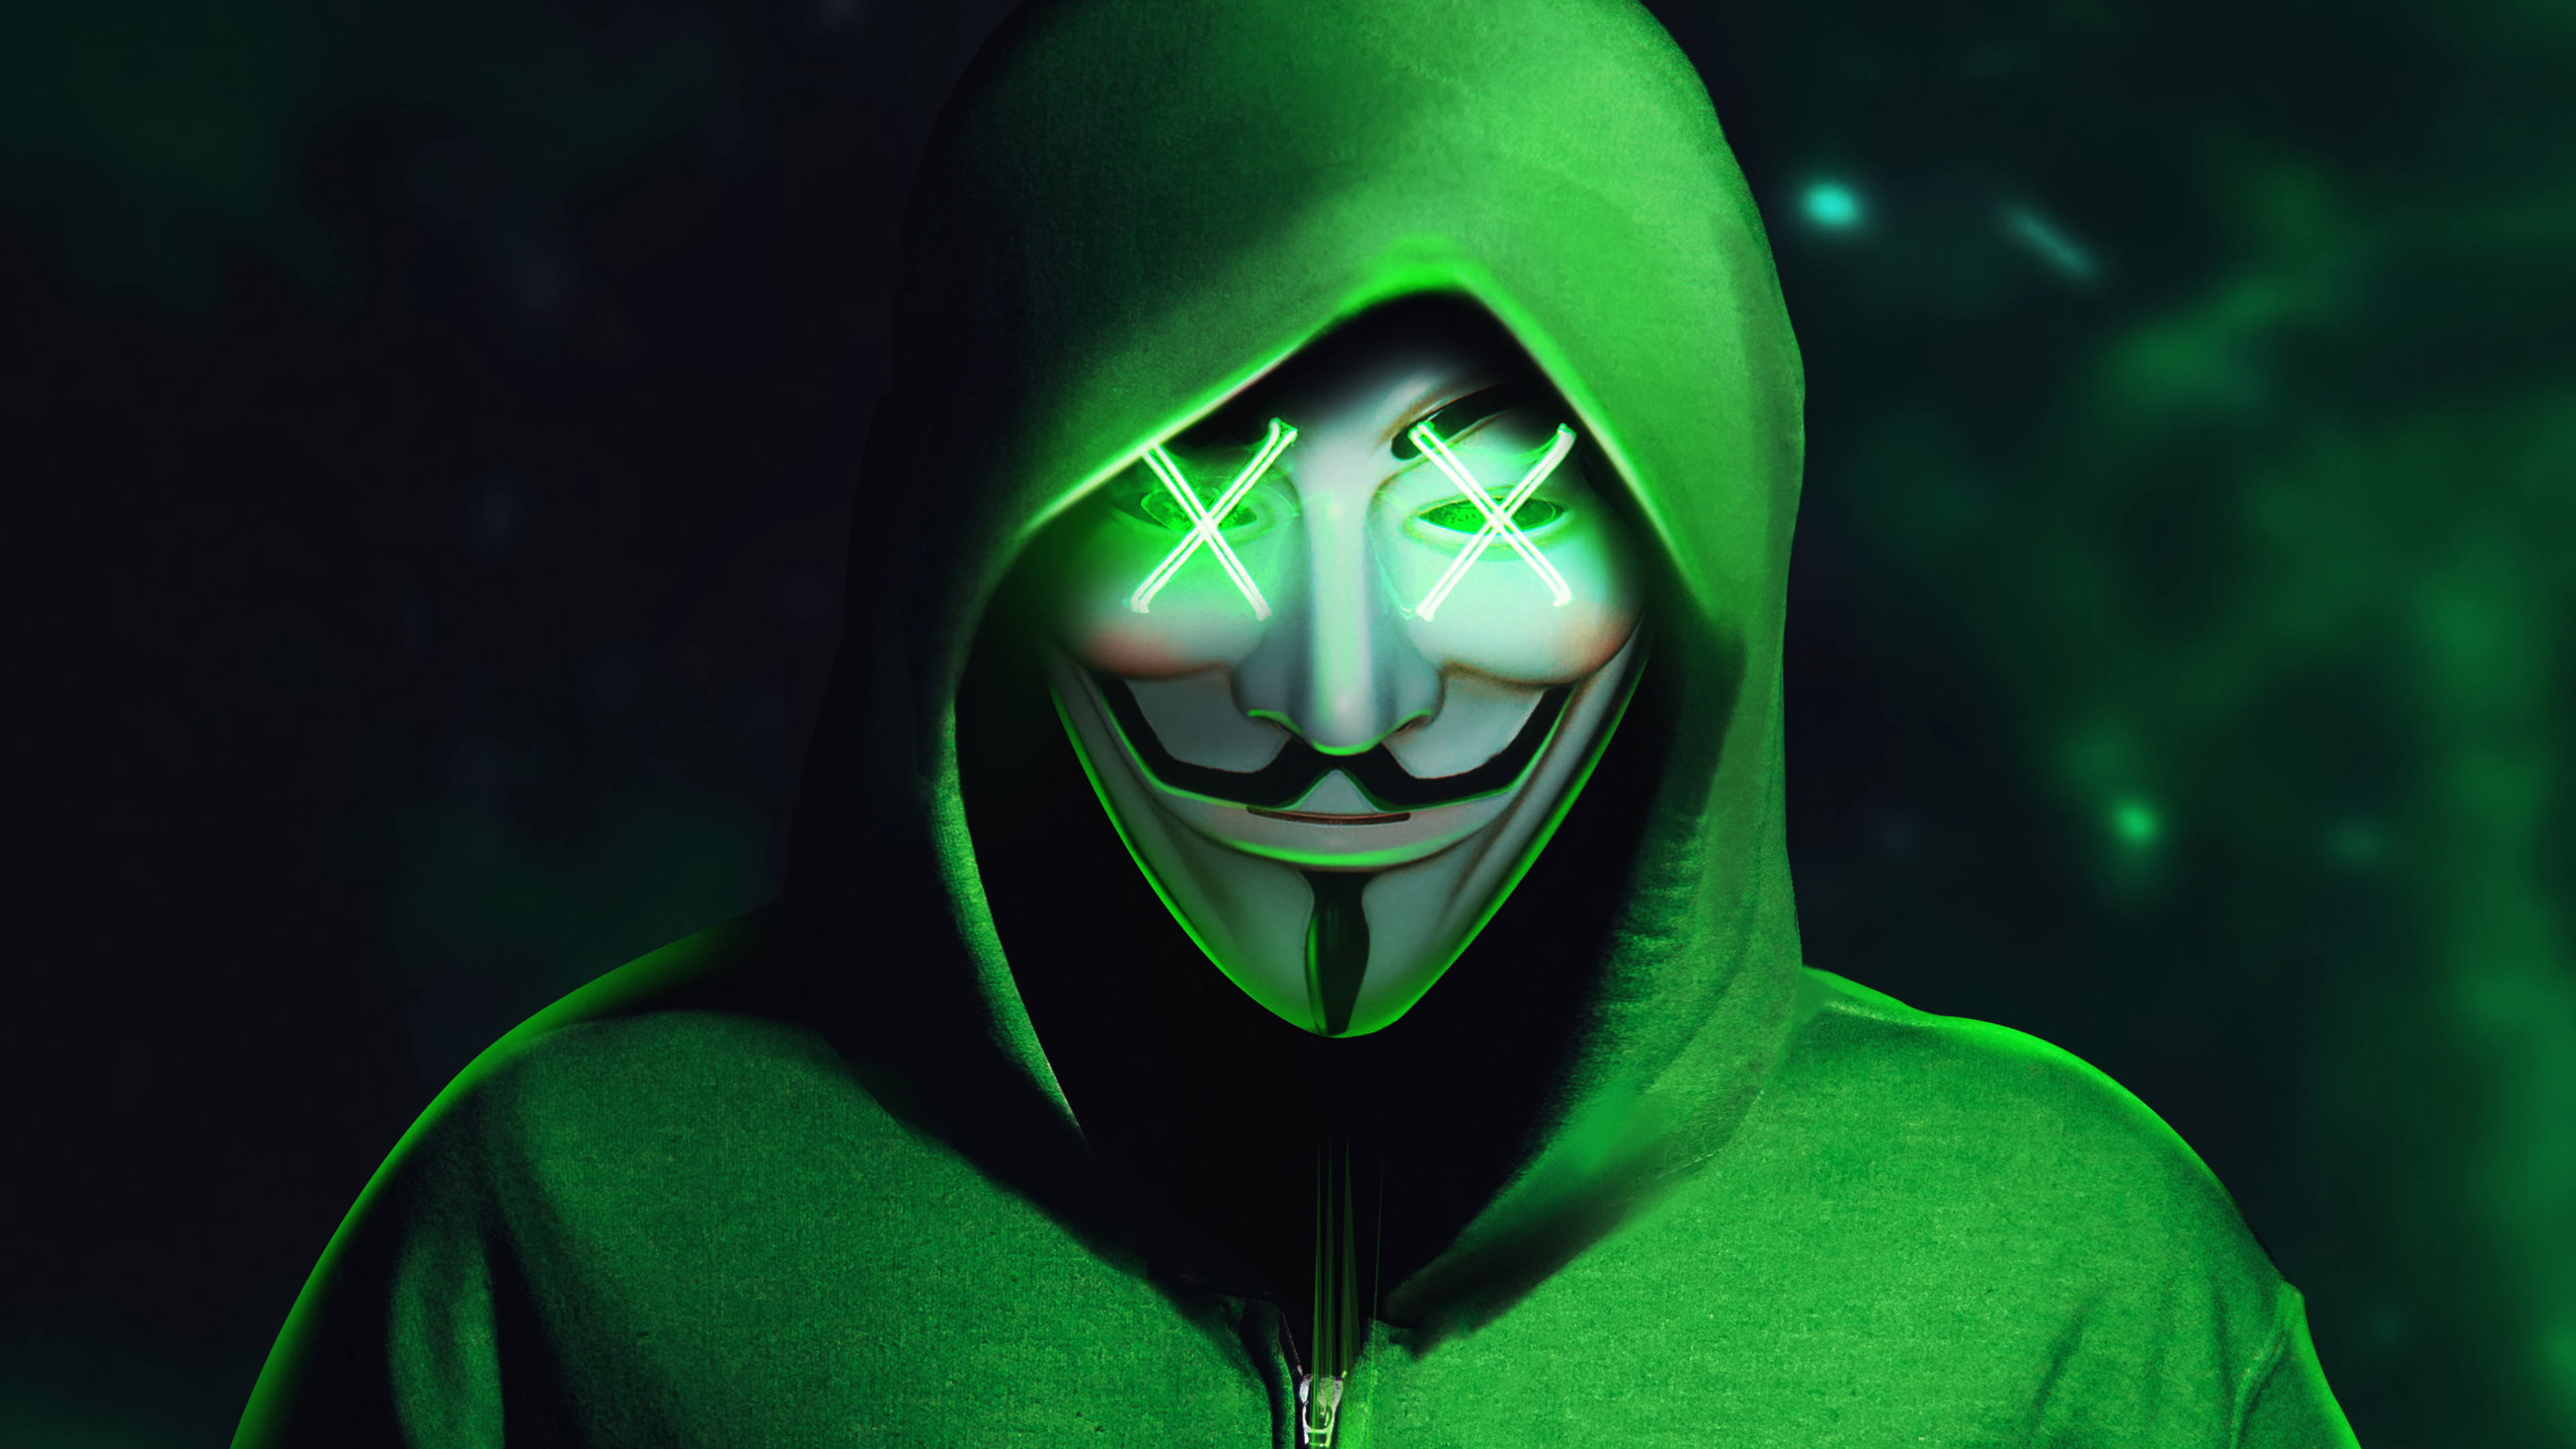 Anonymous Mask - Chiếc mặt nạ ẩn danh một thời luôn gợi lên nhiều tò mò, không chỉ đơn giản là một phụ kiện. Hình ảnh chi tiết và bí ẩn này sẽ khiến bạn cảm thấy như đang bước vào một thế giới ẩn danh đầy lý thú. Hãy xem ngay!